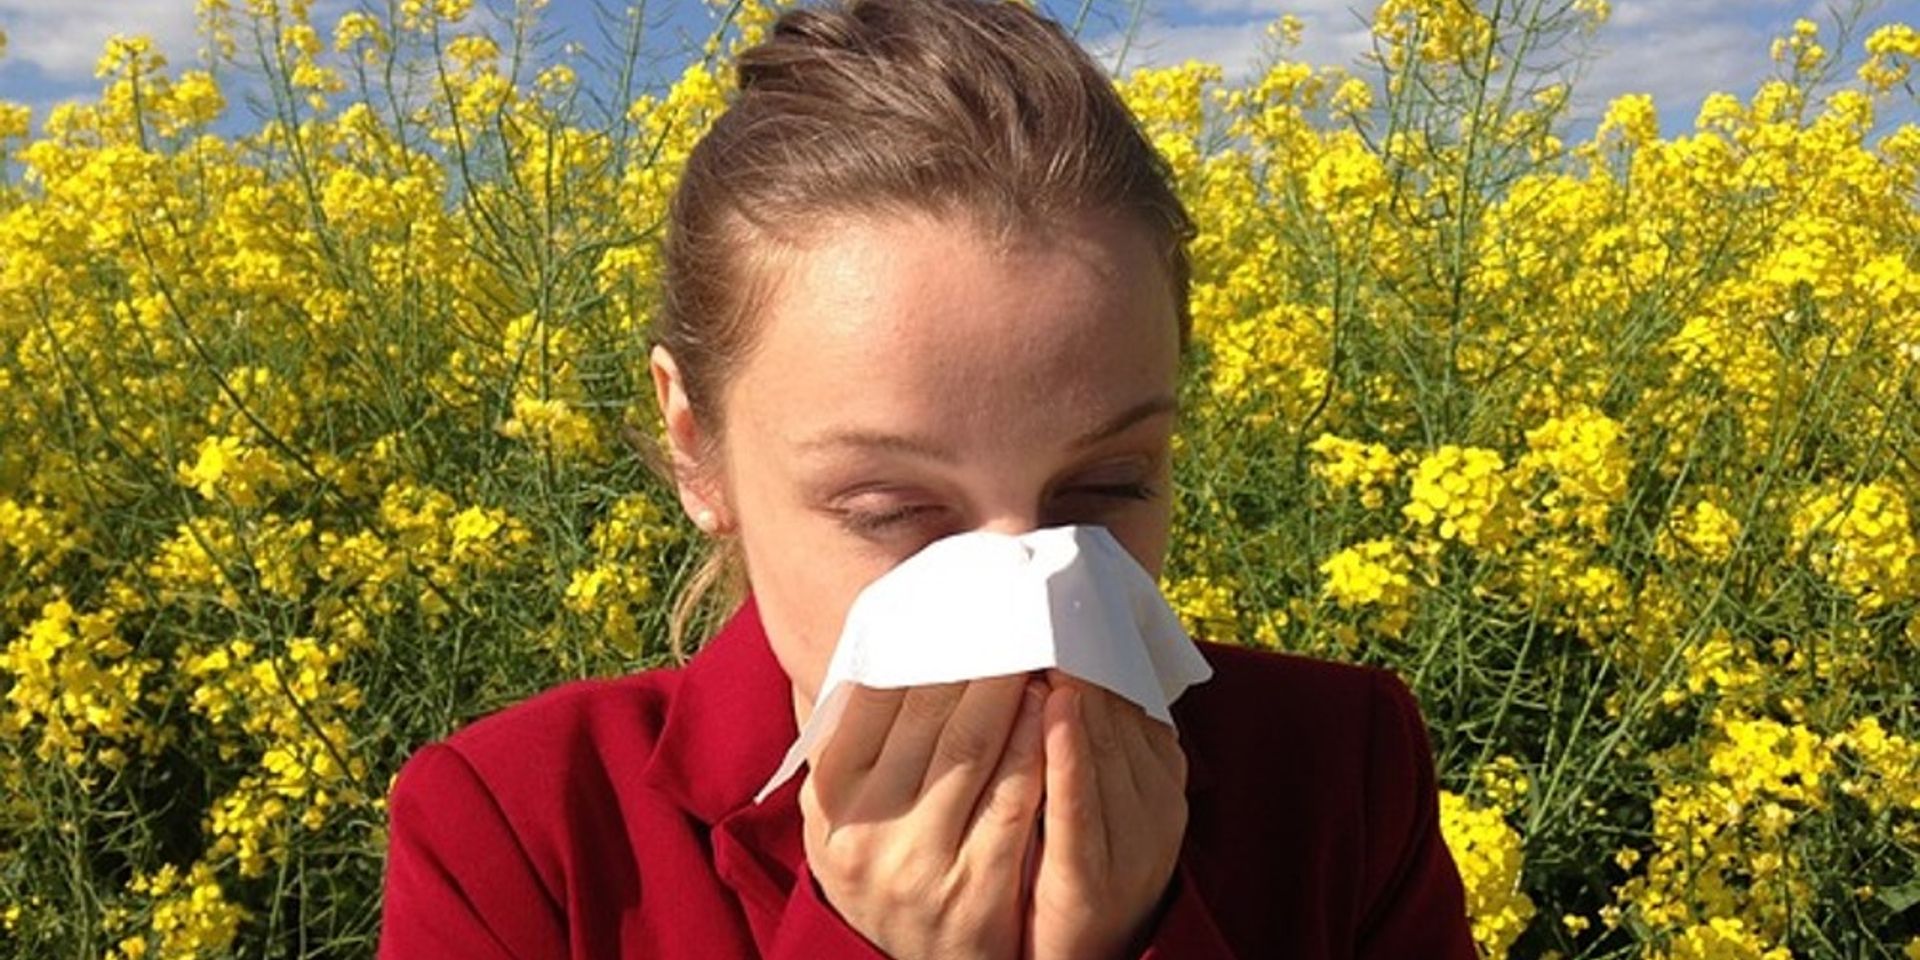 Ön is érintett? – összeírják az allergiásokat